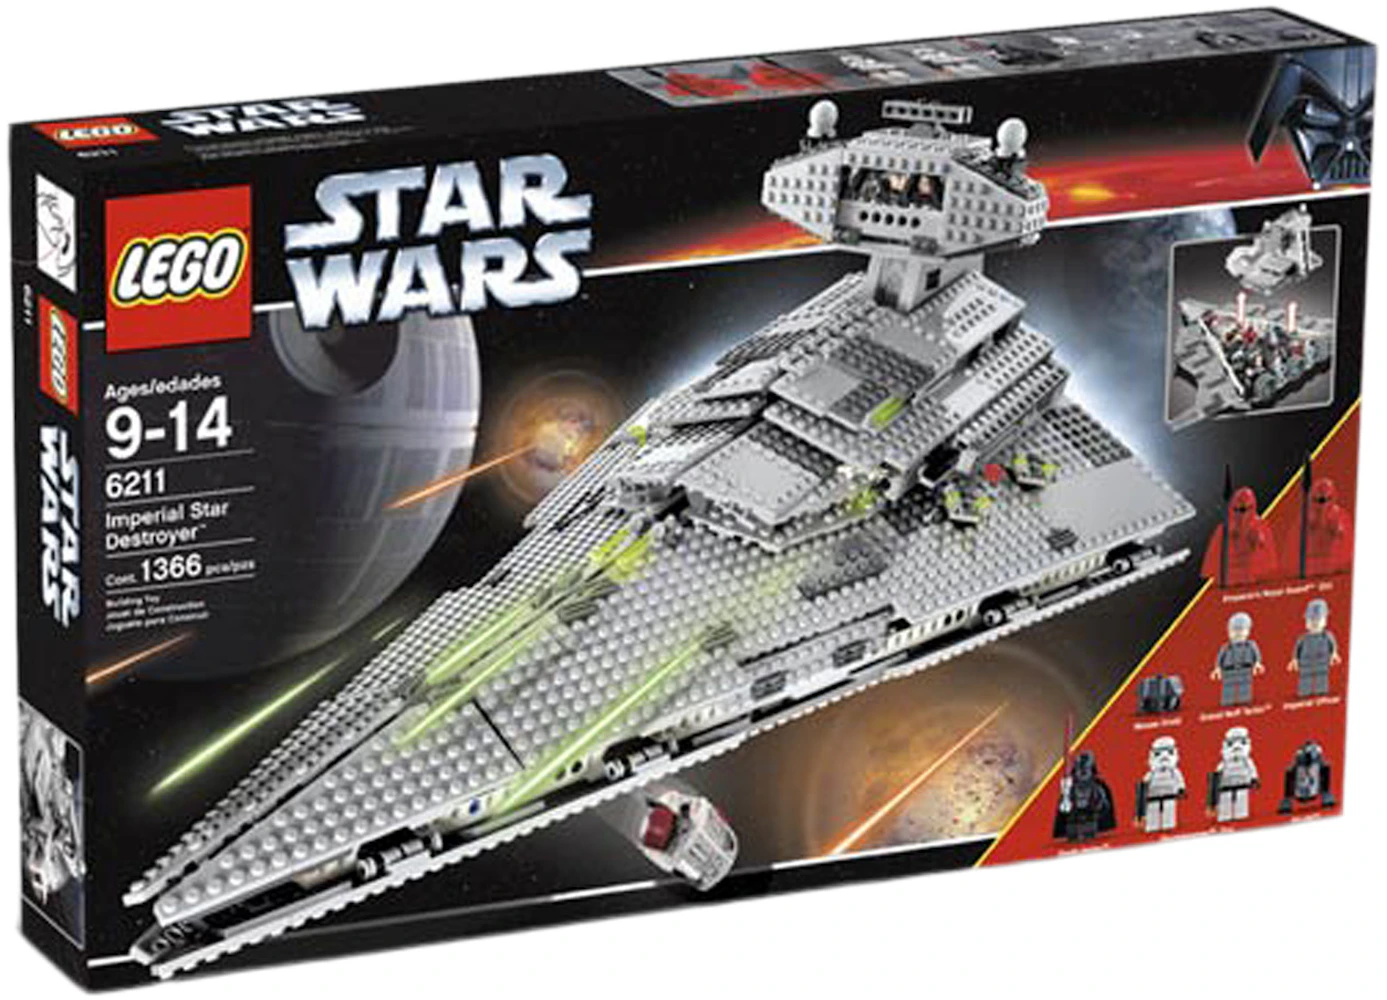 Star Wars Imperial Star Destroyer Set 6211 - US